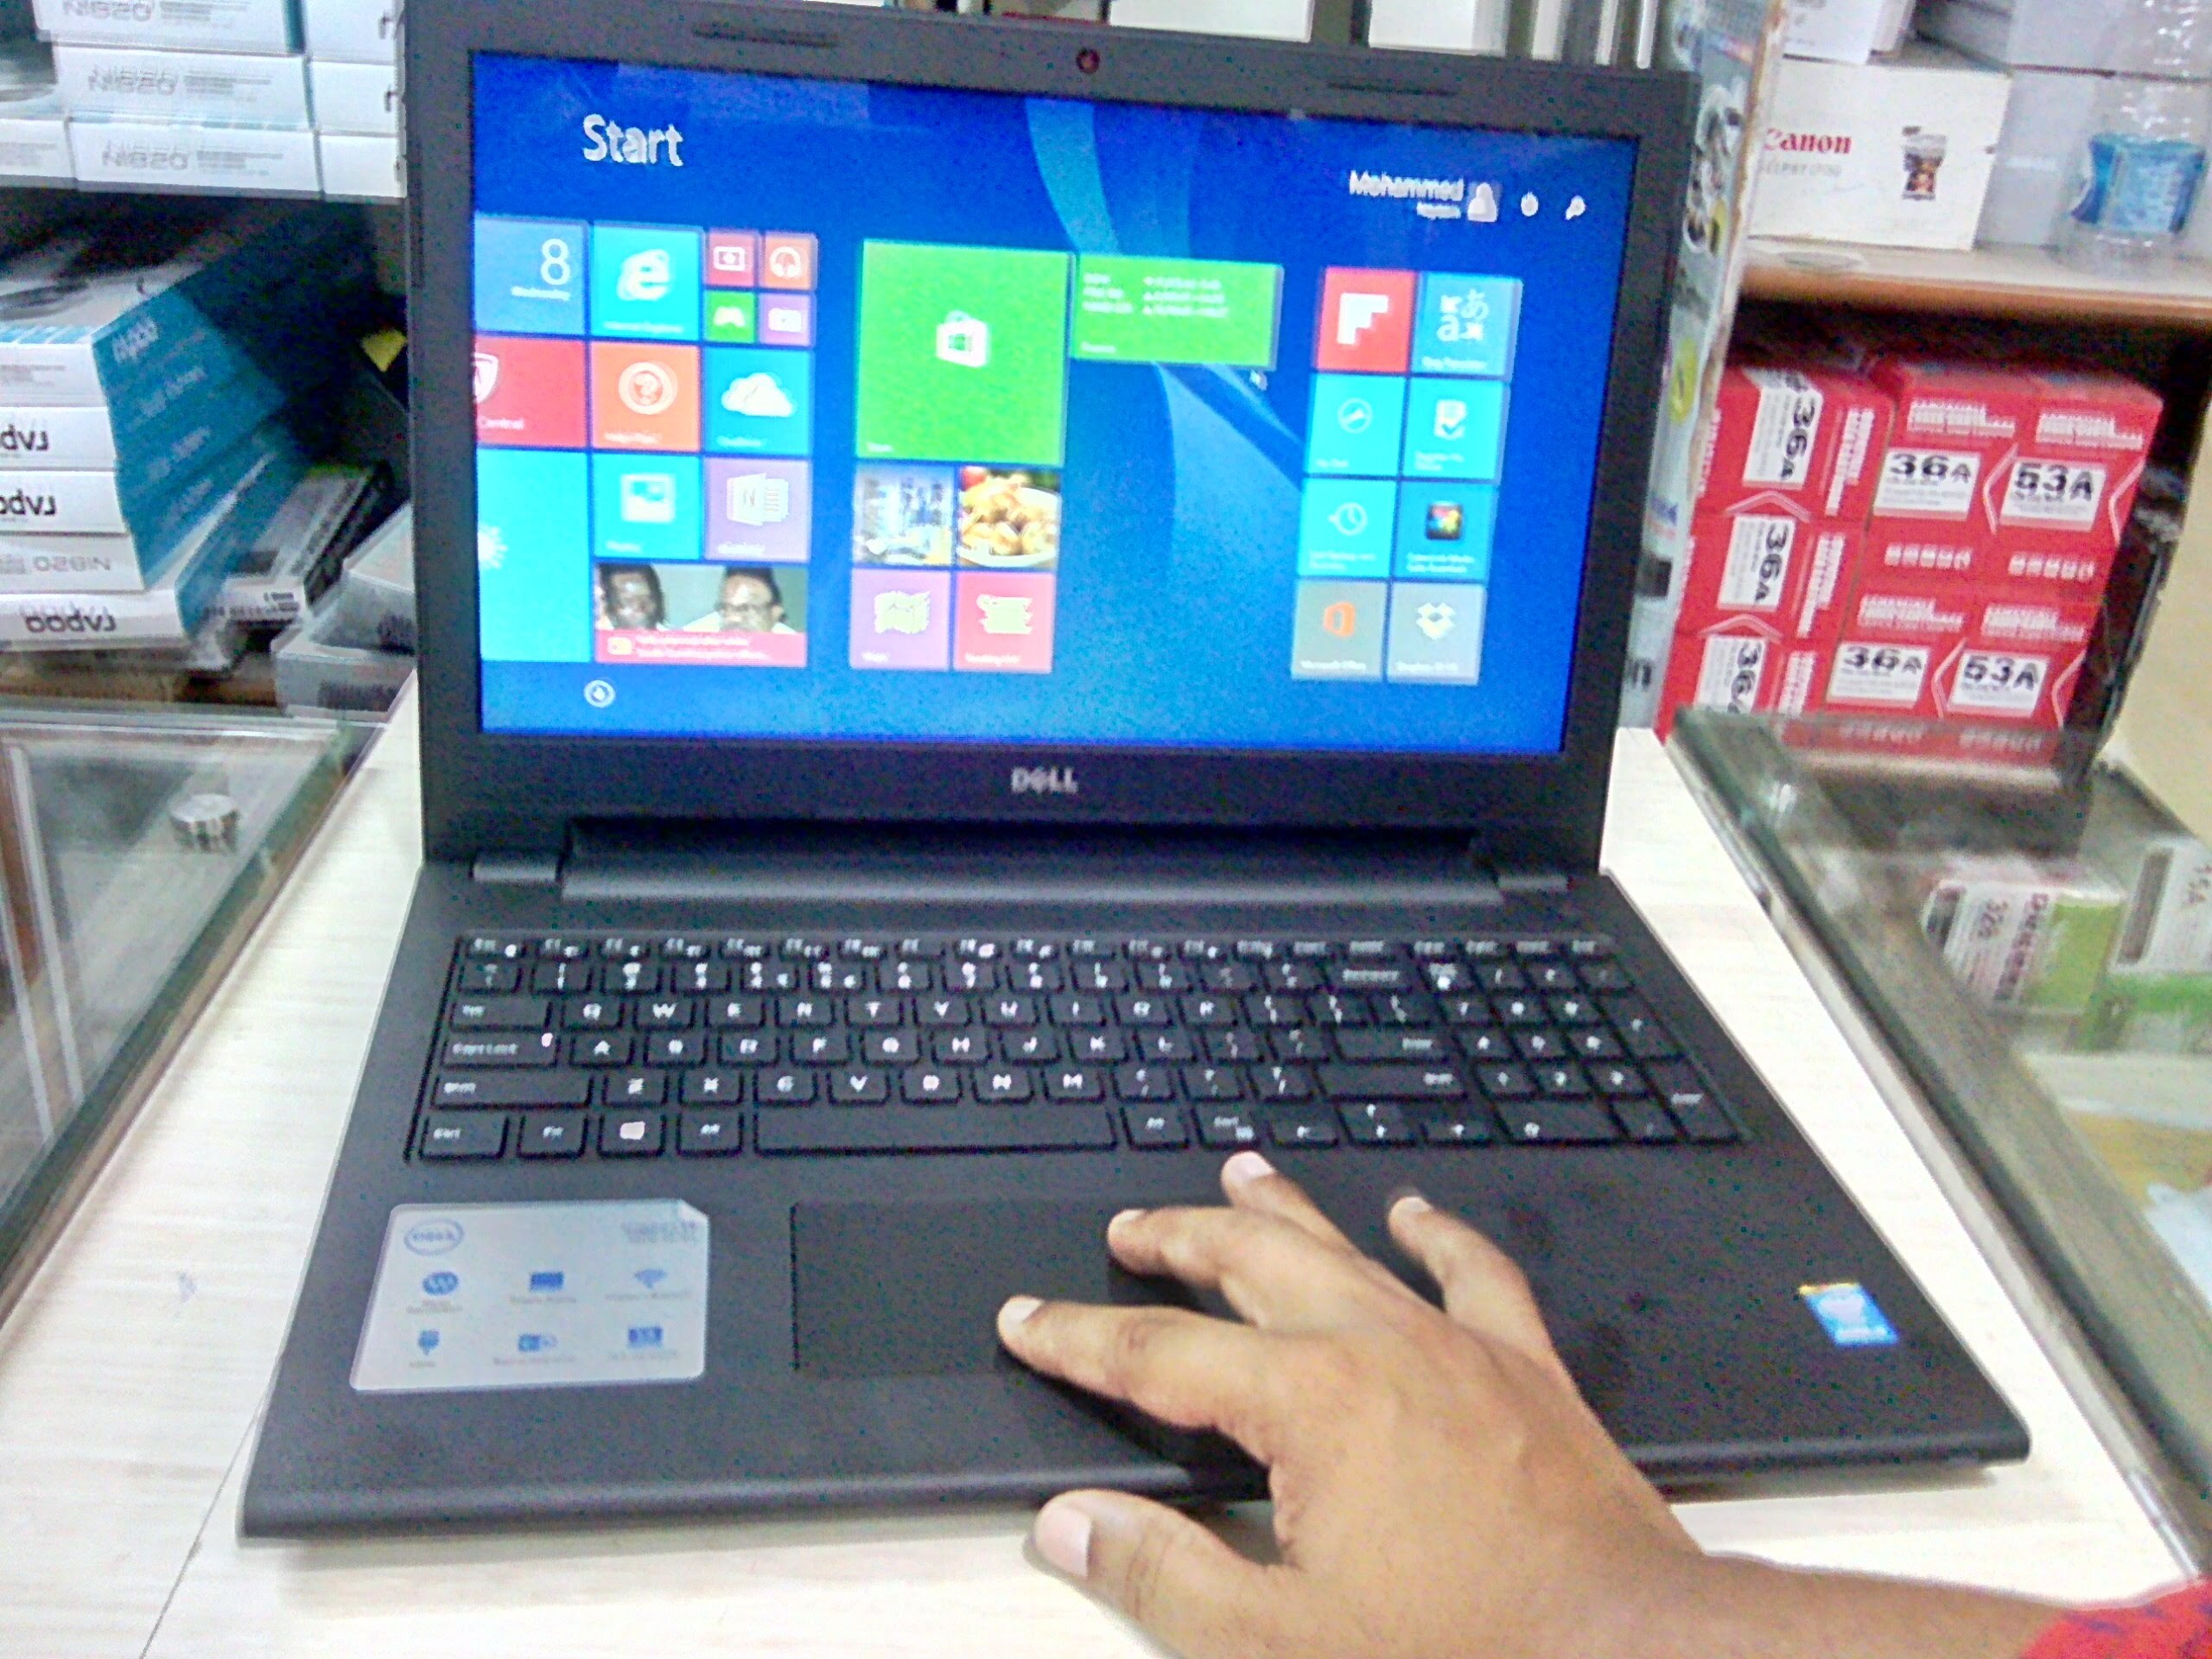 Laptop Dell Inspiron 3543 - Intel Core™ i5 ,5200U,4GB,500GB,VGA INTEL,Win 8.1,Touch